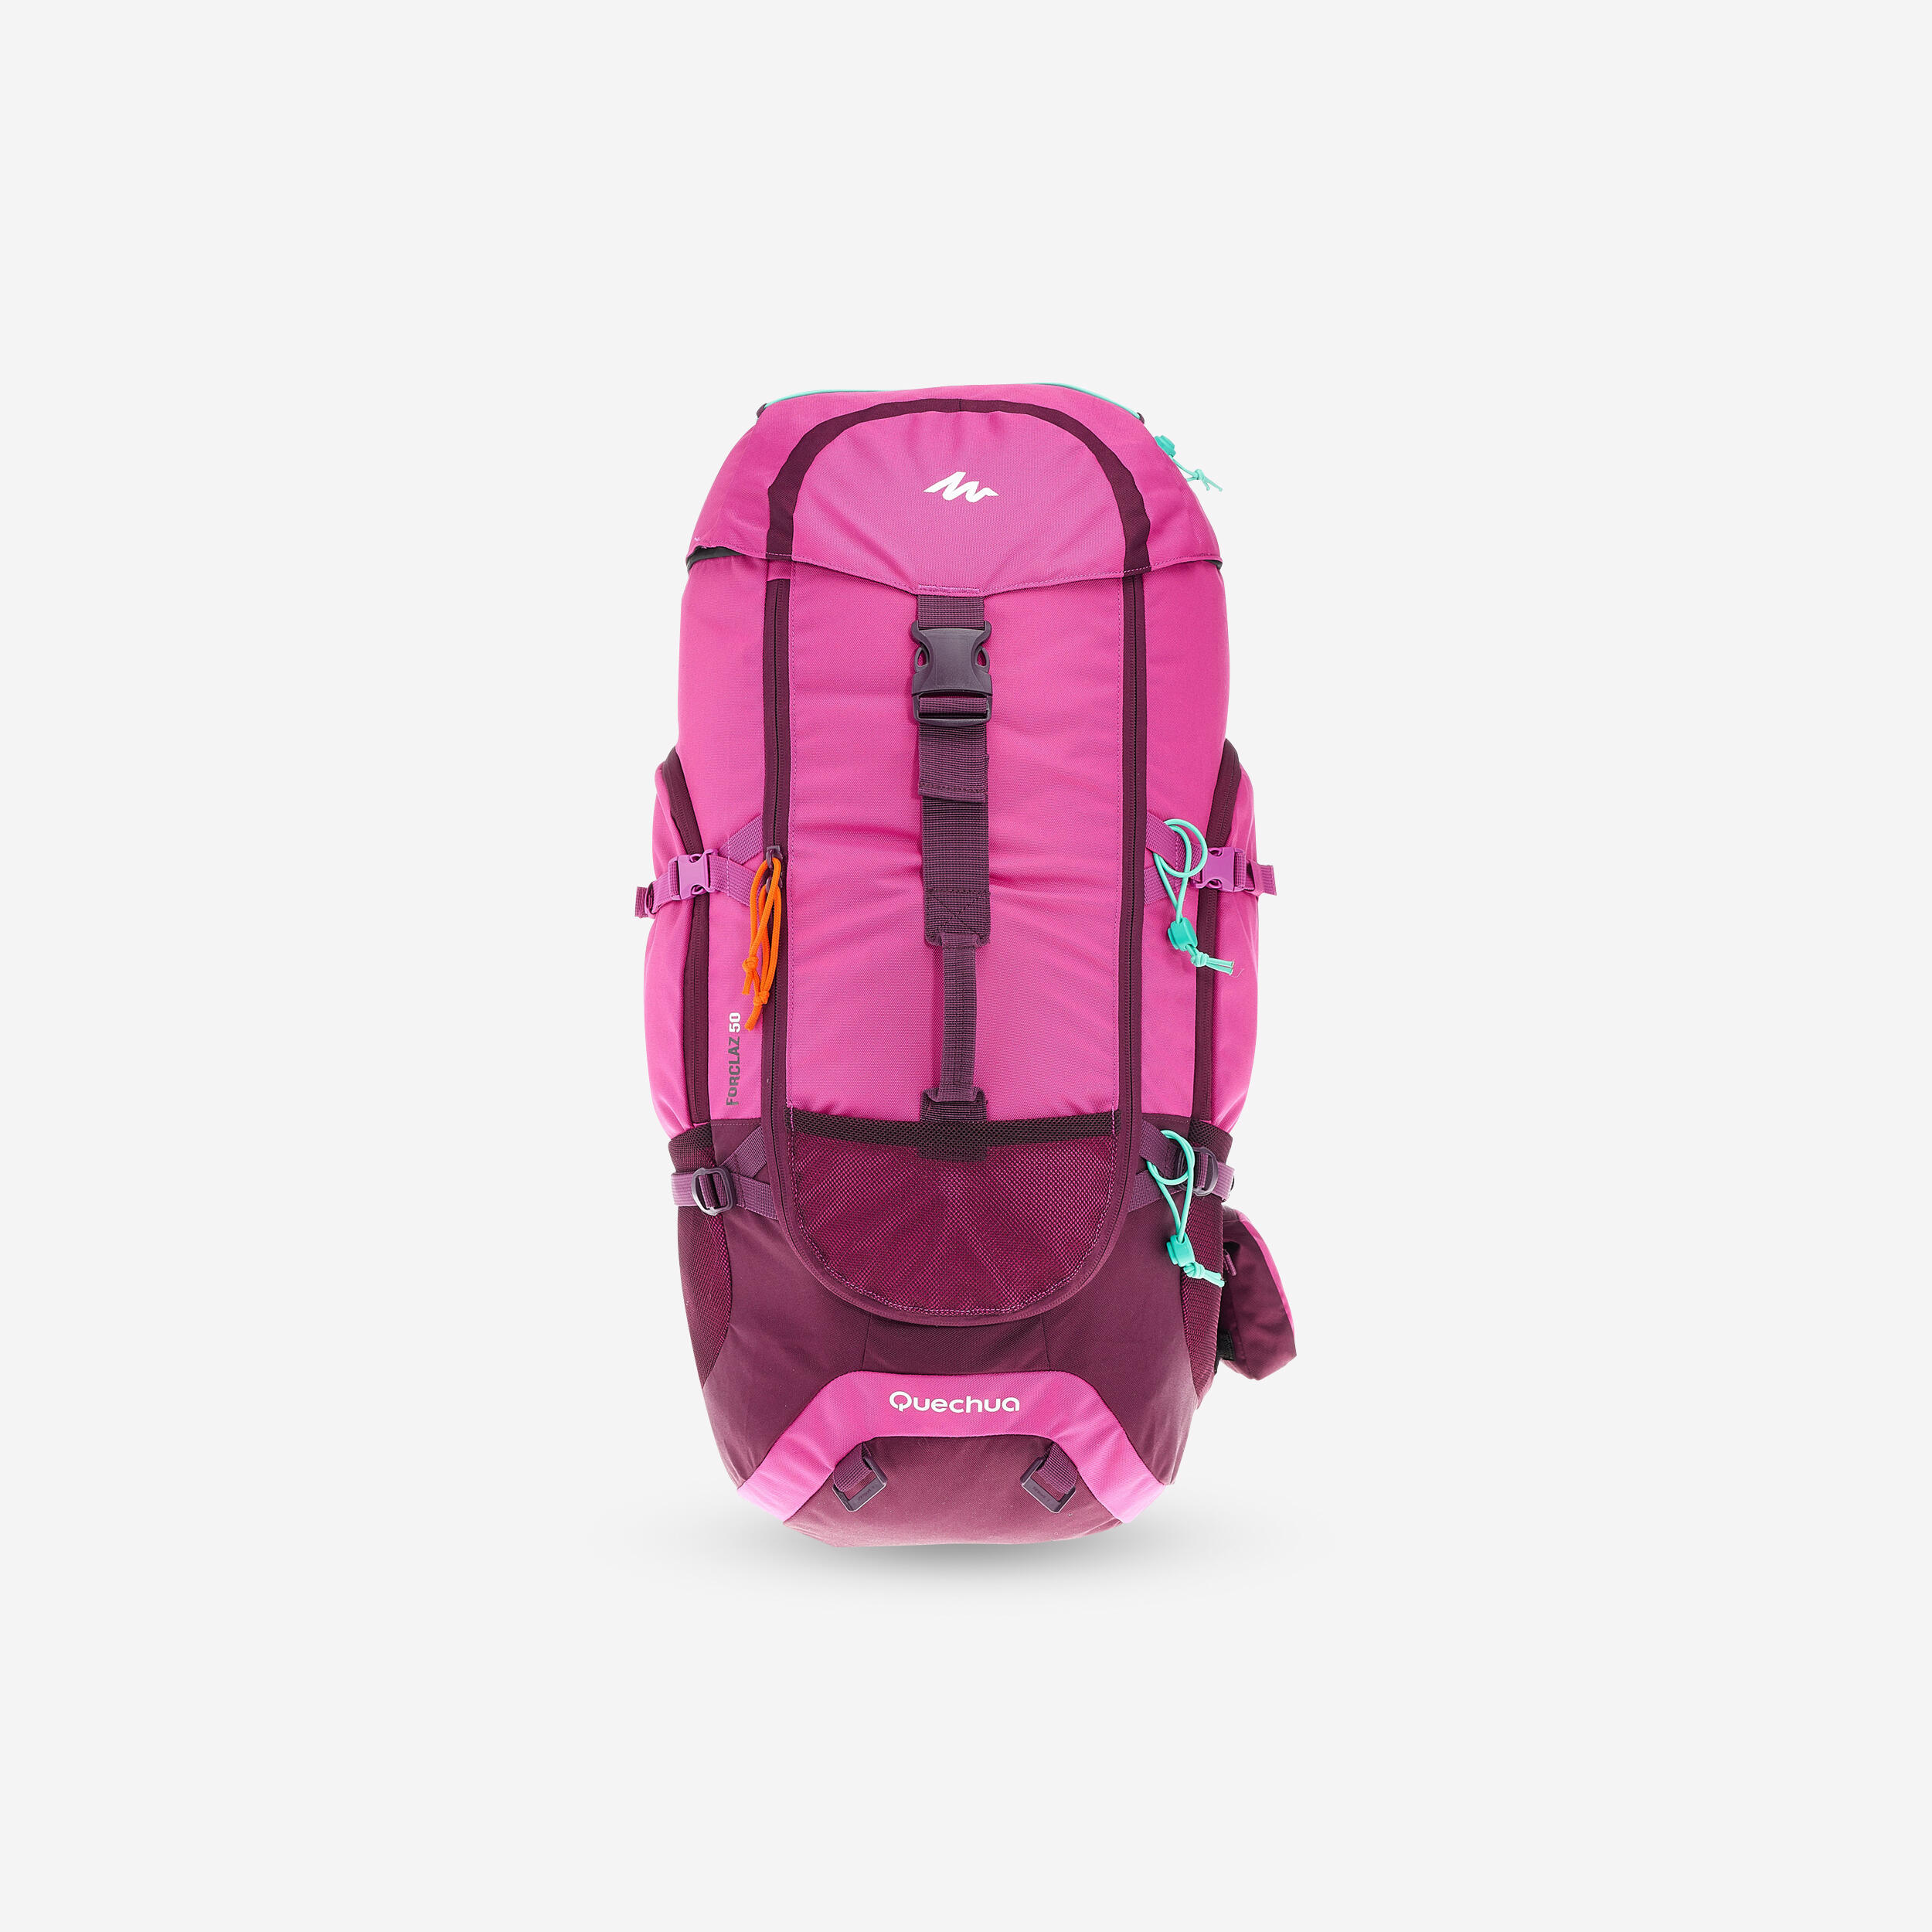 FORCLAZ Travel Backpack 50L - Forclaz 50